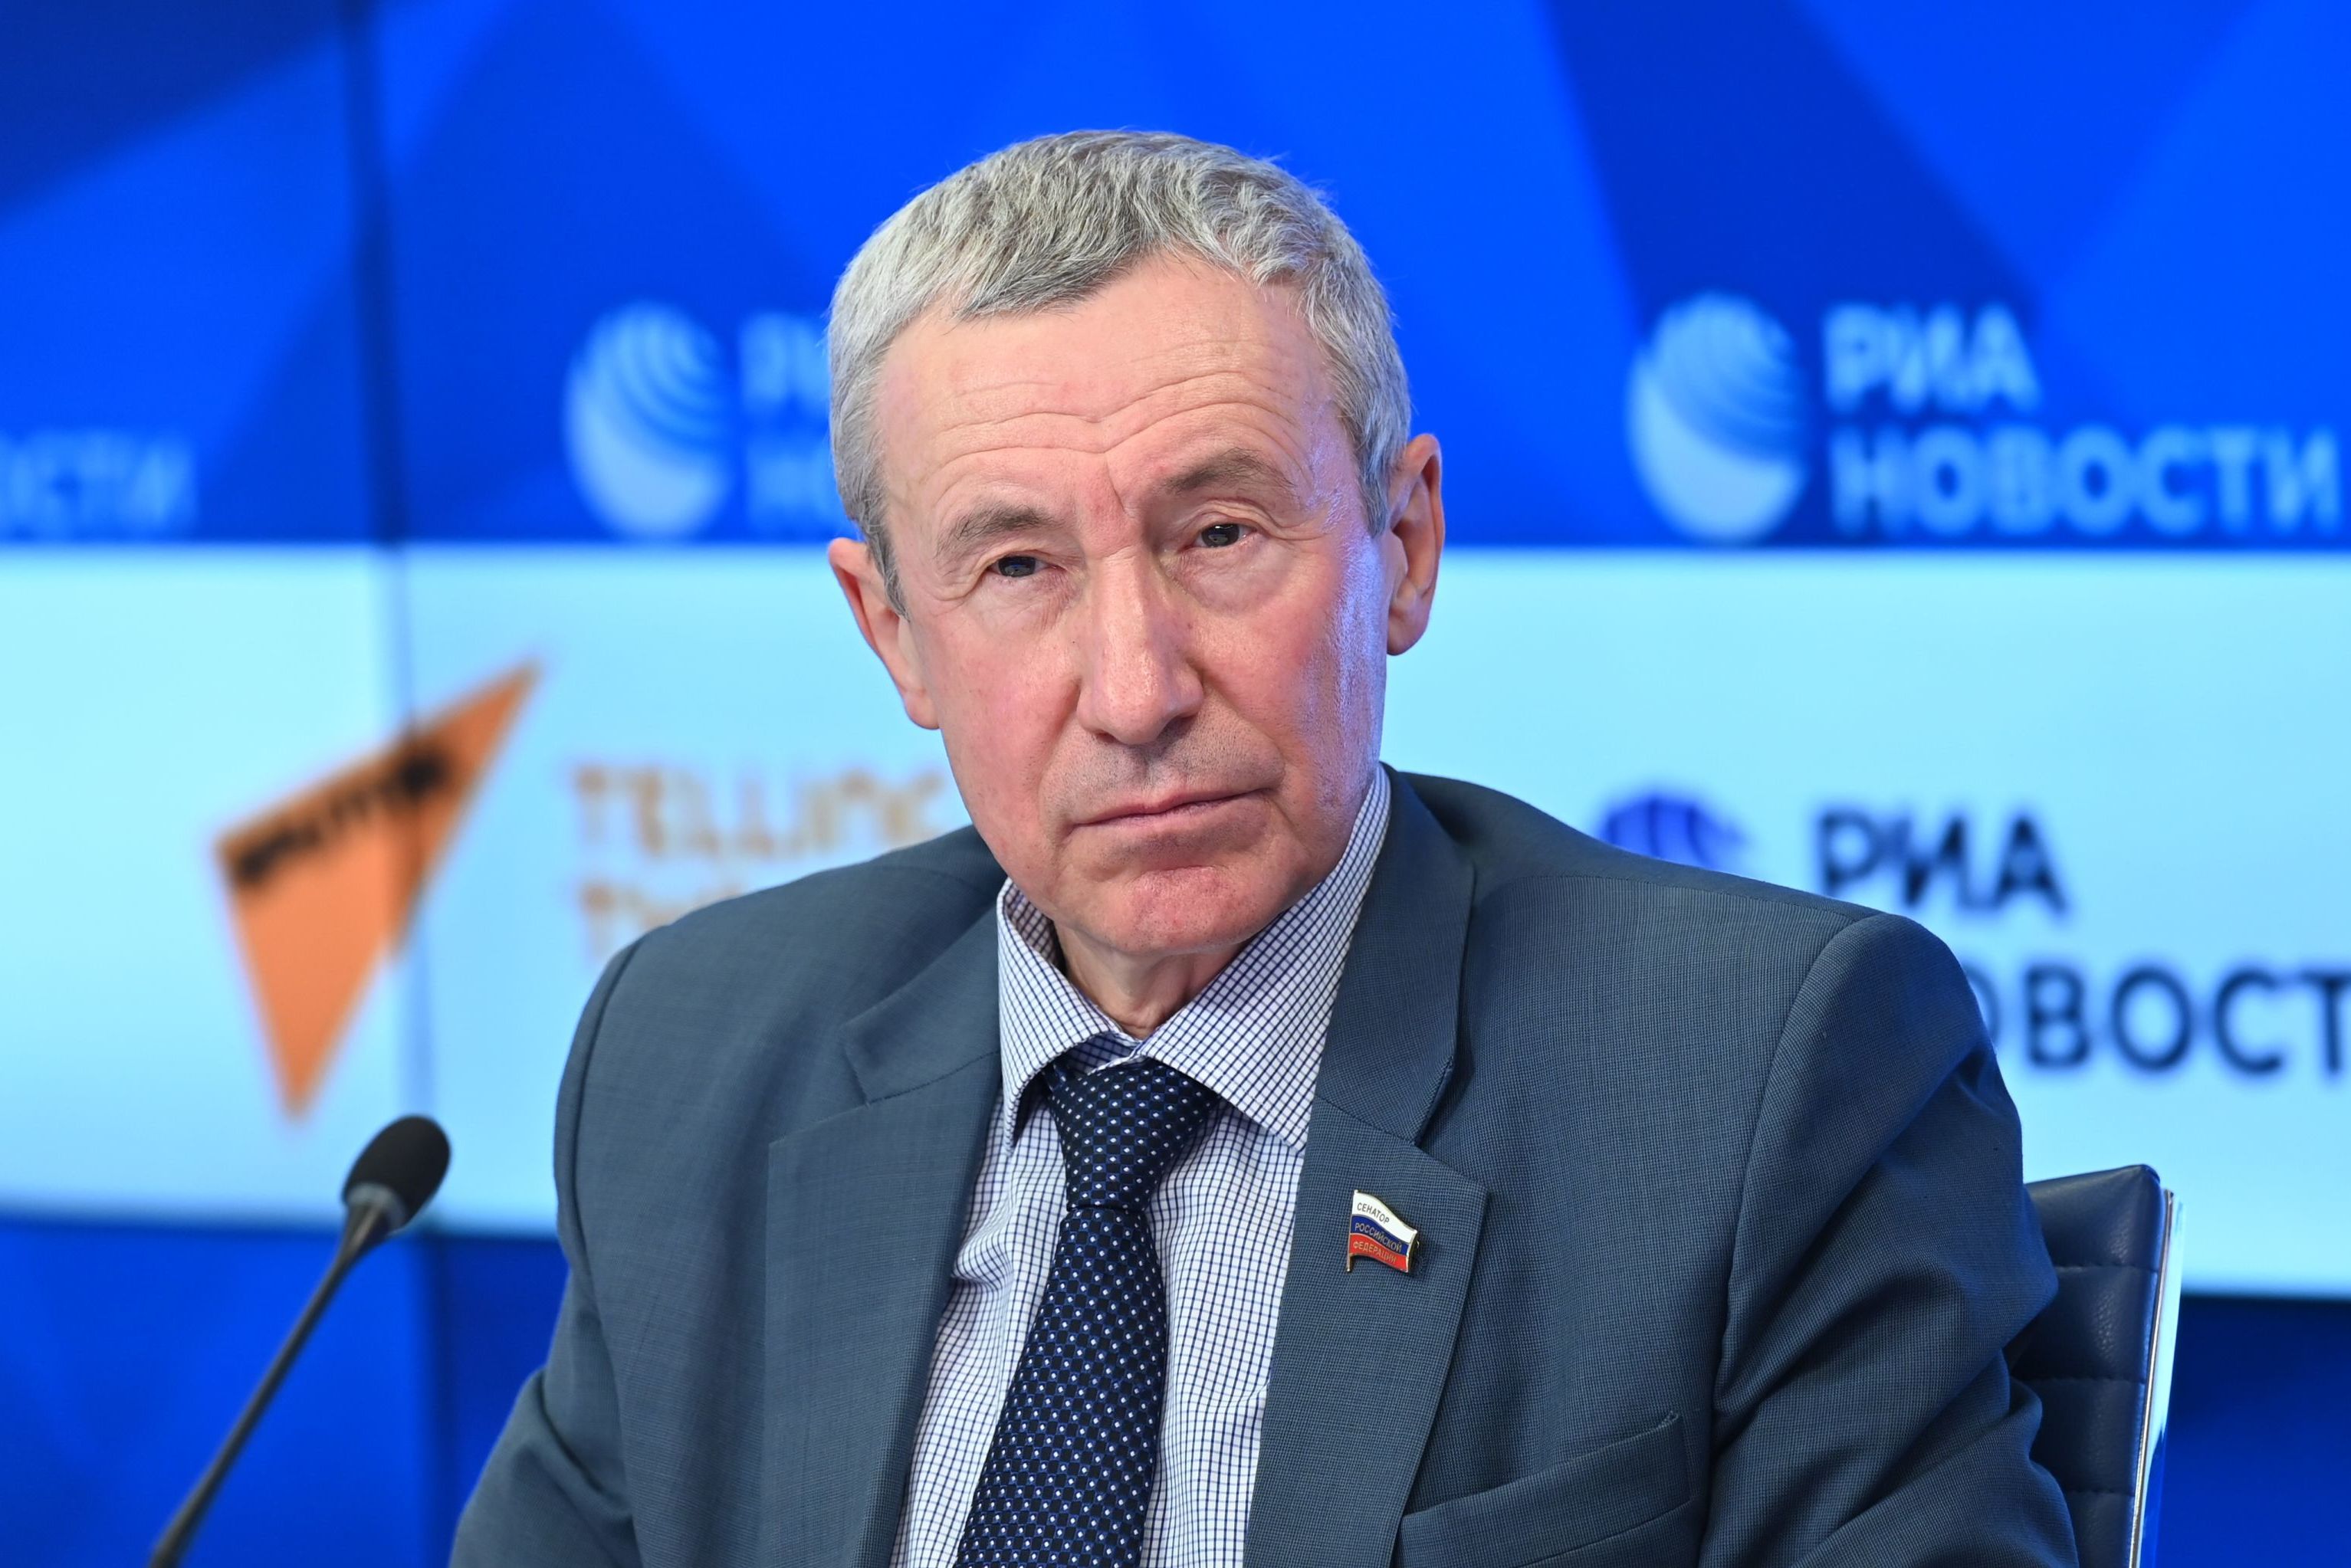 Член Совета Федерации Андрей Климов